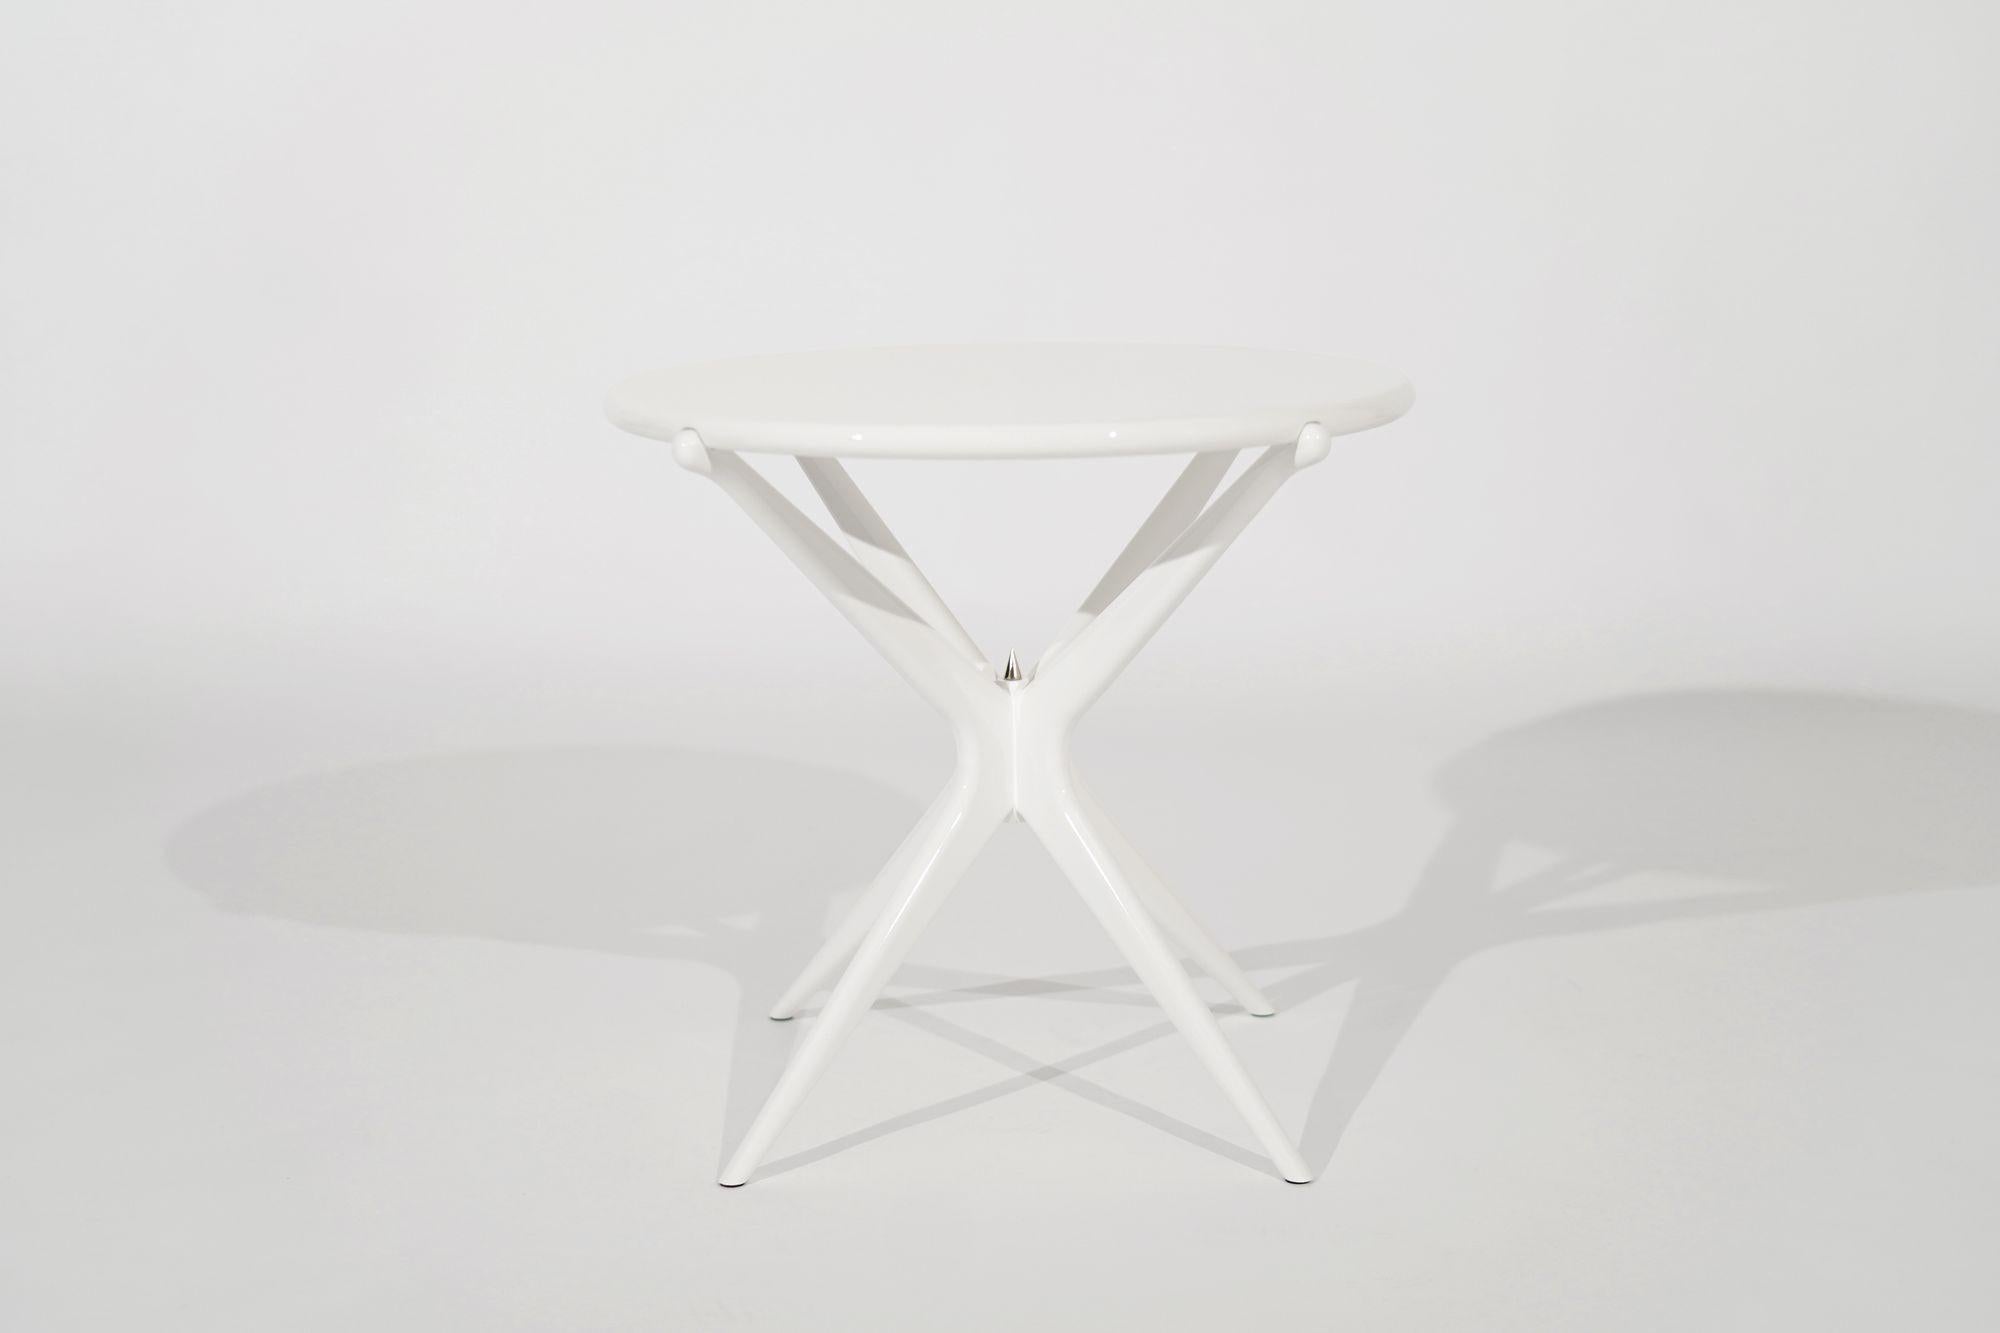 Unser neu gestalteter Gazelle-Tisch. Dieser Tisch aus massivem Nussbaumholz hat eine leichte Ästhetik, die auf starken, handgeformten Beinen balanciert. Mit seiner stumpfkantigen Oberseite bietet er einen natürlichen Ansatz für organischen